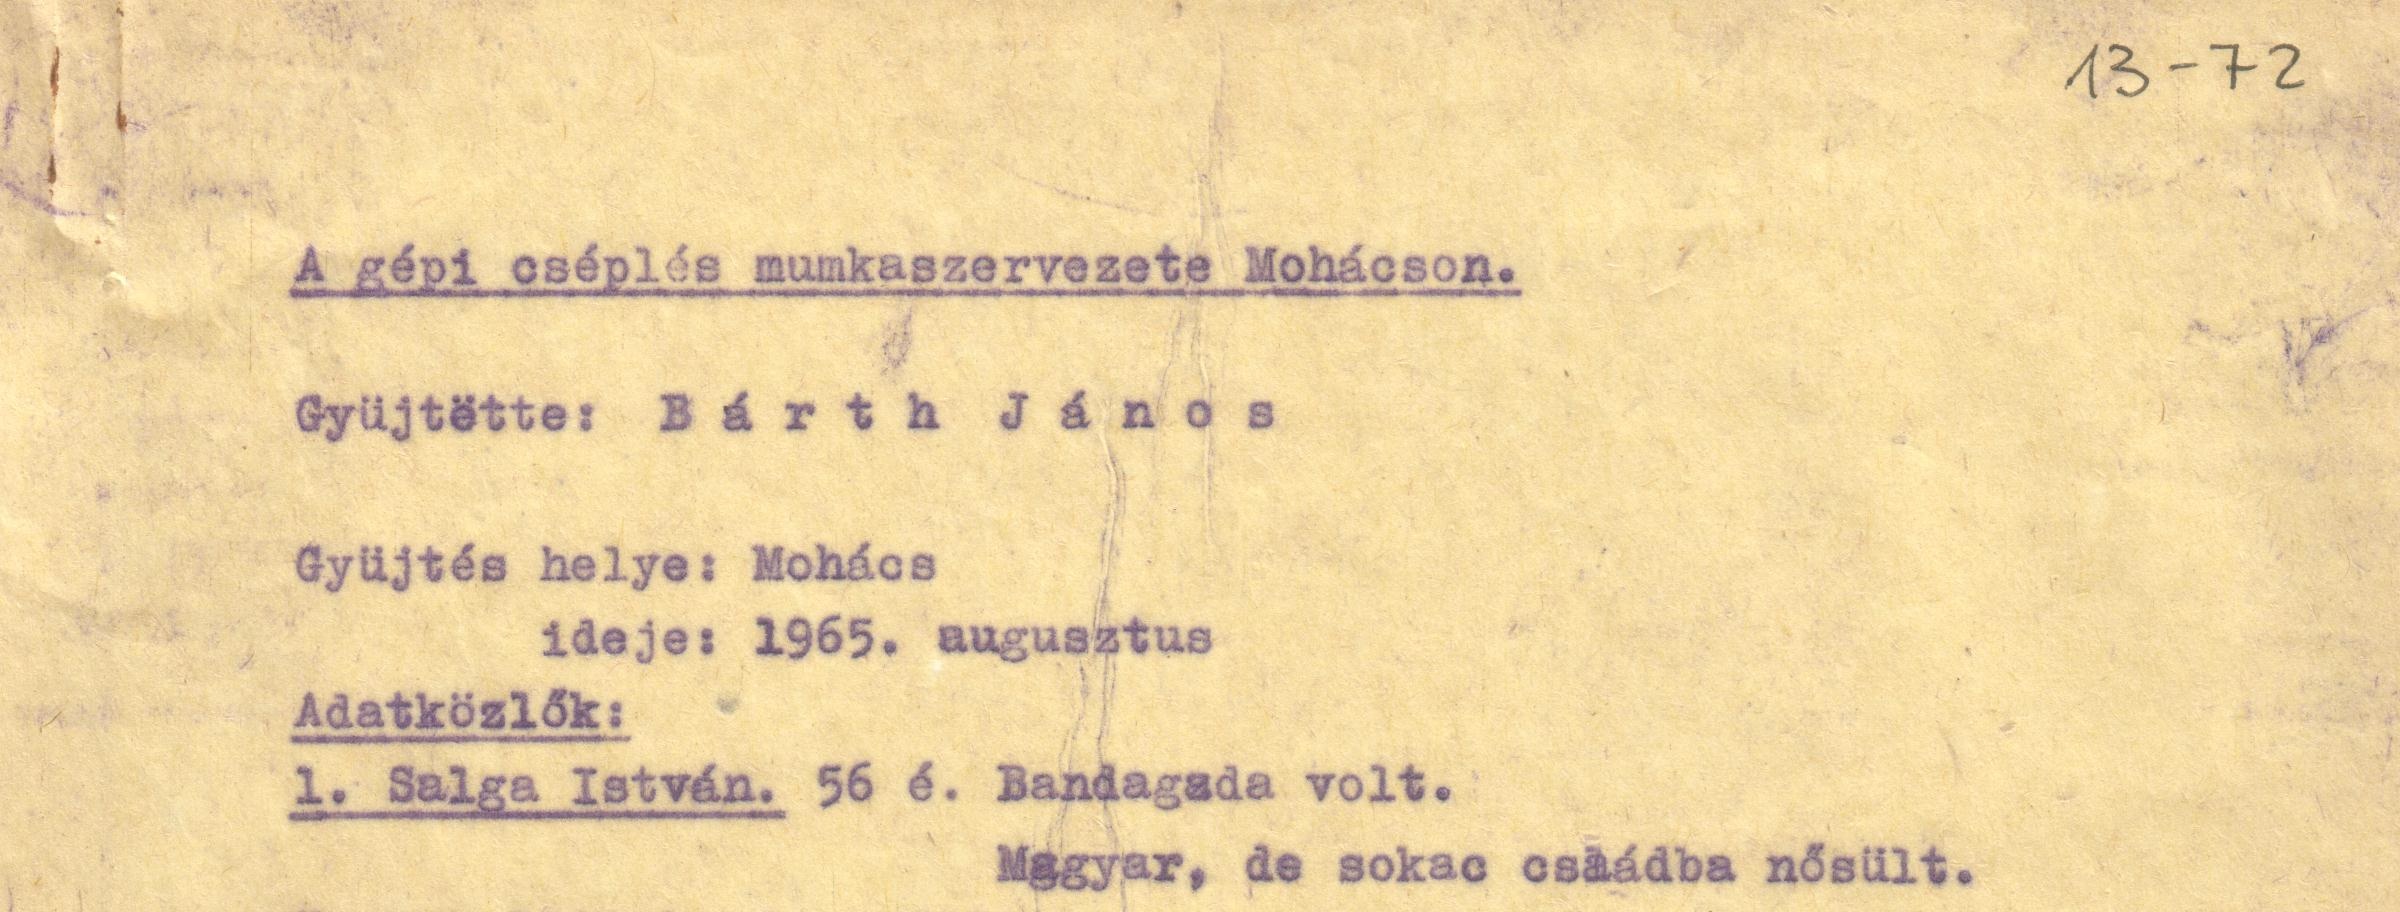 "A gépi cséplés munkaszervezete Mohácson" c. gyűjtés szövege. (Viski Károly Múzeum Kalocsa RR-F)